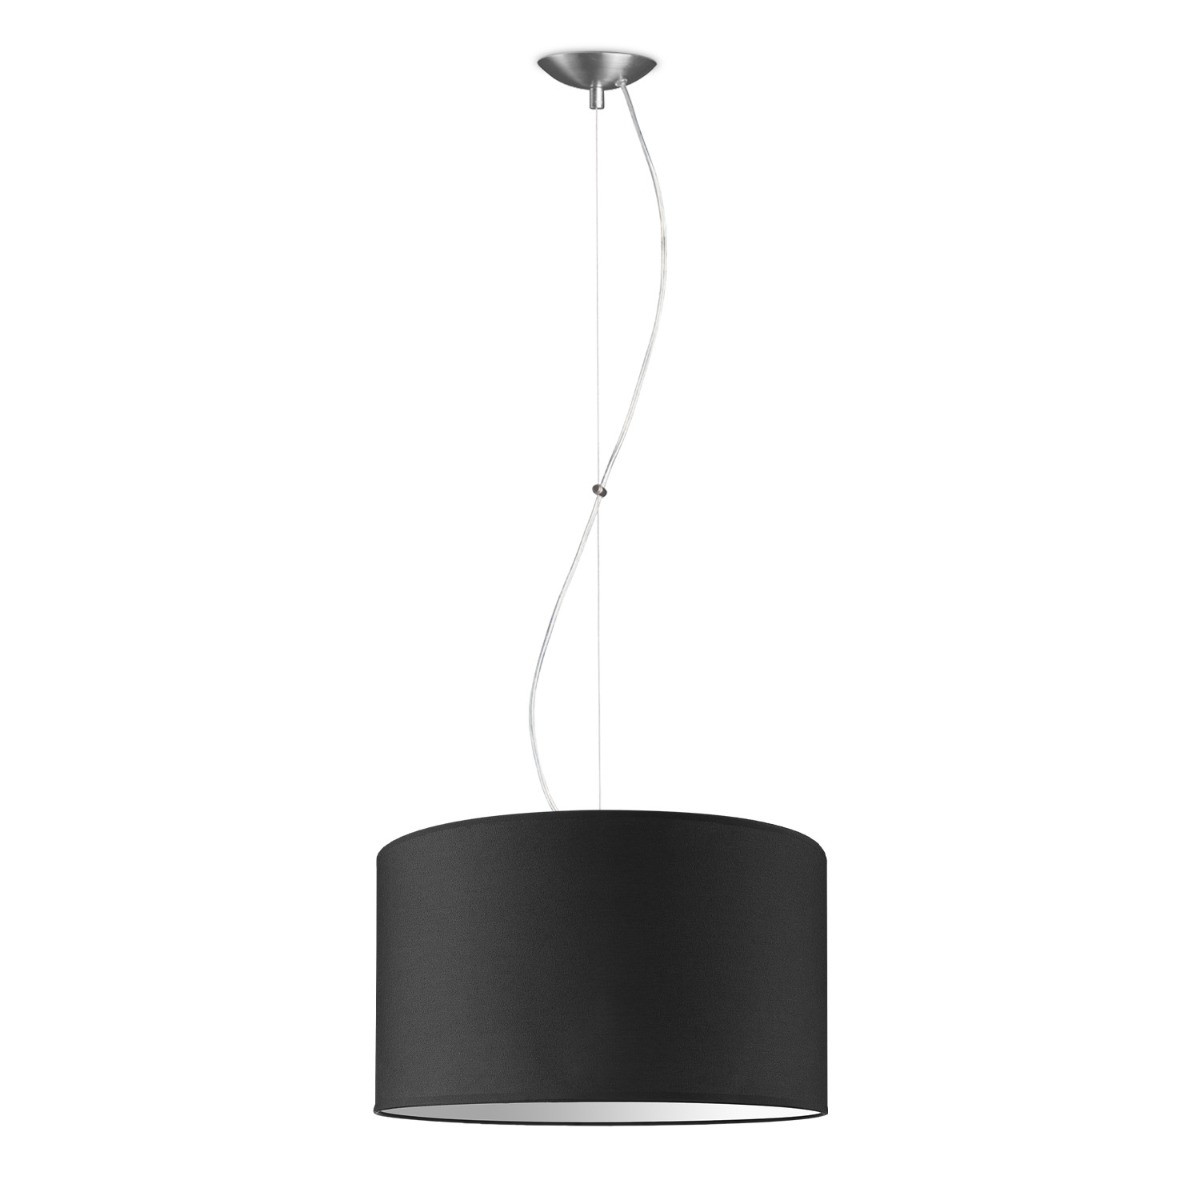 Light depot - hanglamp basic deluxe bling Ø 40 cm - zwart - Outlet